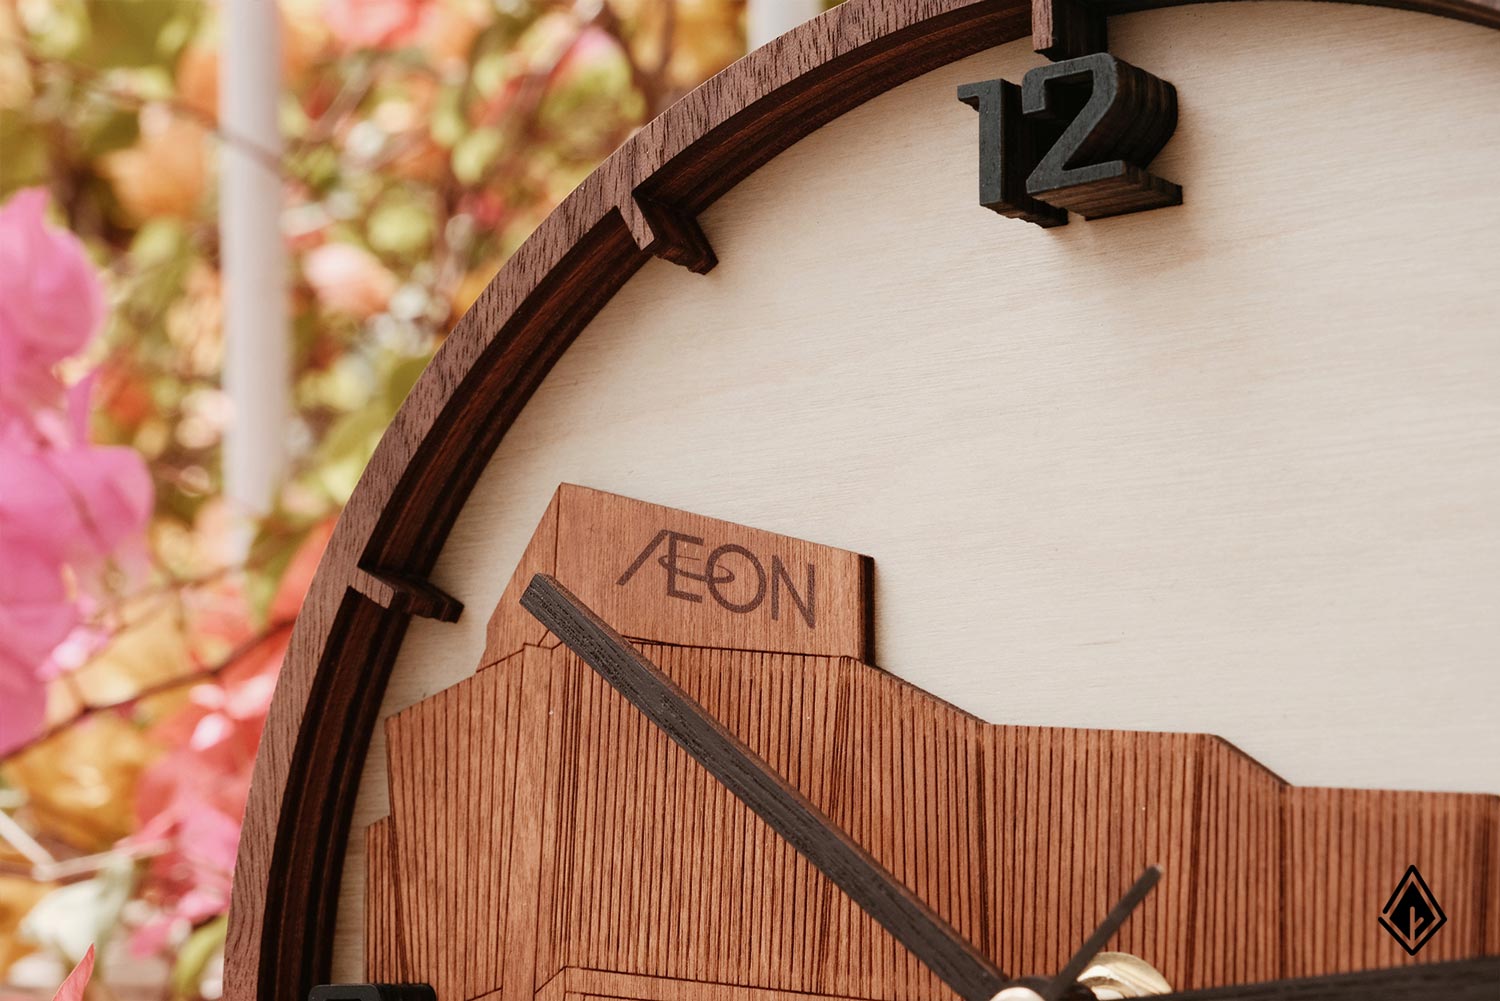 Lớp nền bằng gỗ Maple làm tổng thể chiếc đồng hồ trang nhã và thanh lịch hơn. Ảnh: Nau Factory